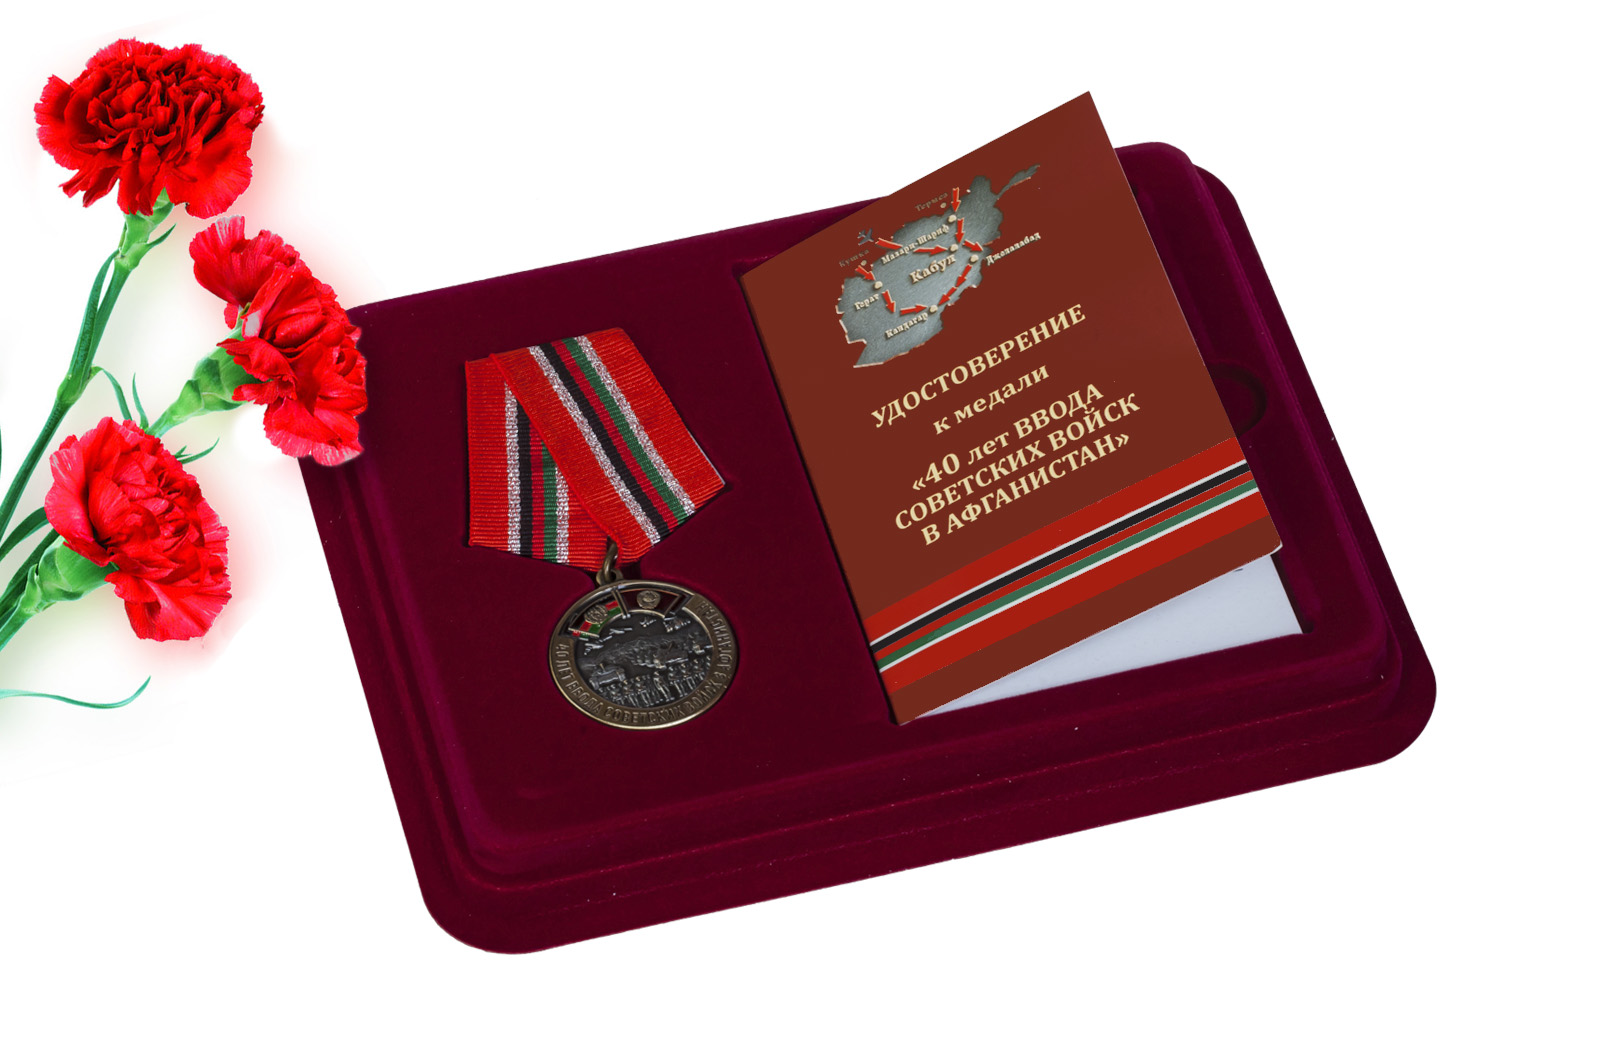 Купить медаль 40-летие ввода Советских войск в Афганистан онлайн выгодно